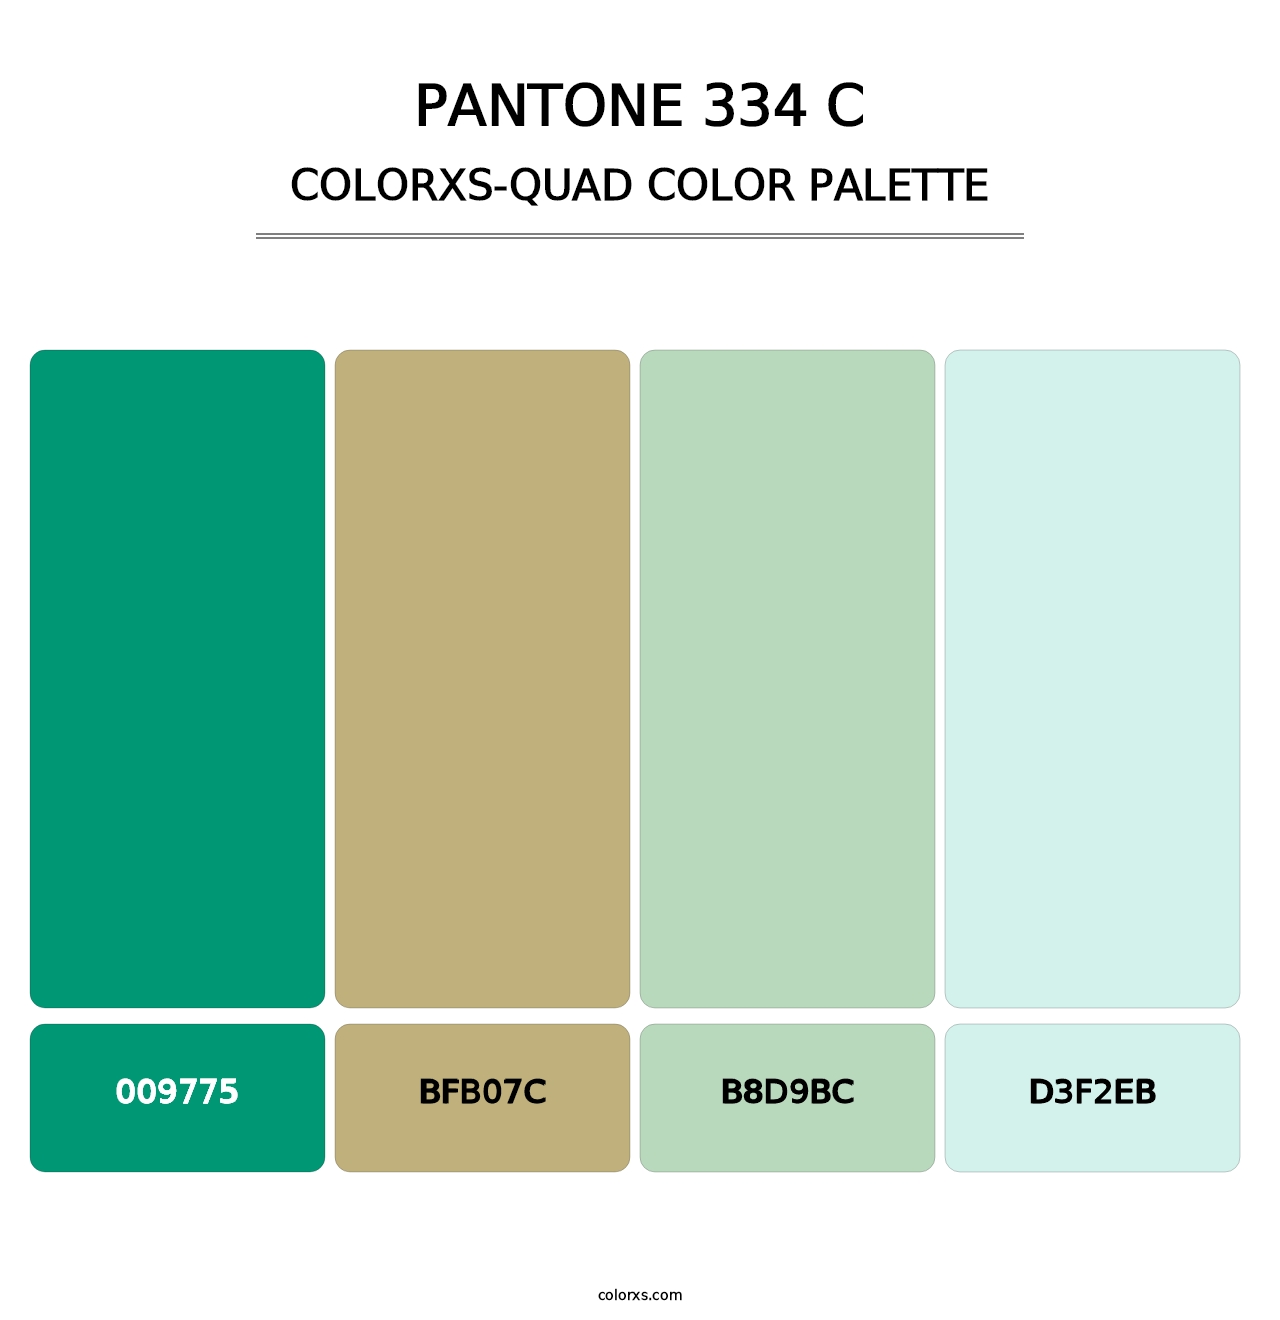 PANTONE 334 C - Colorxs Quad Palette